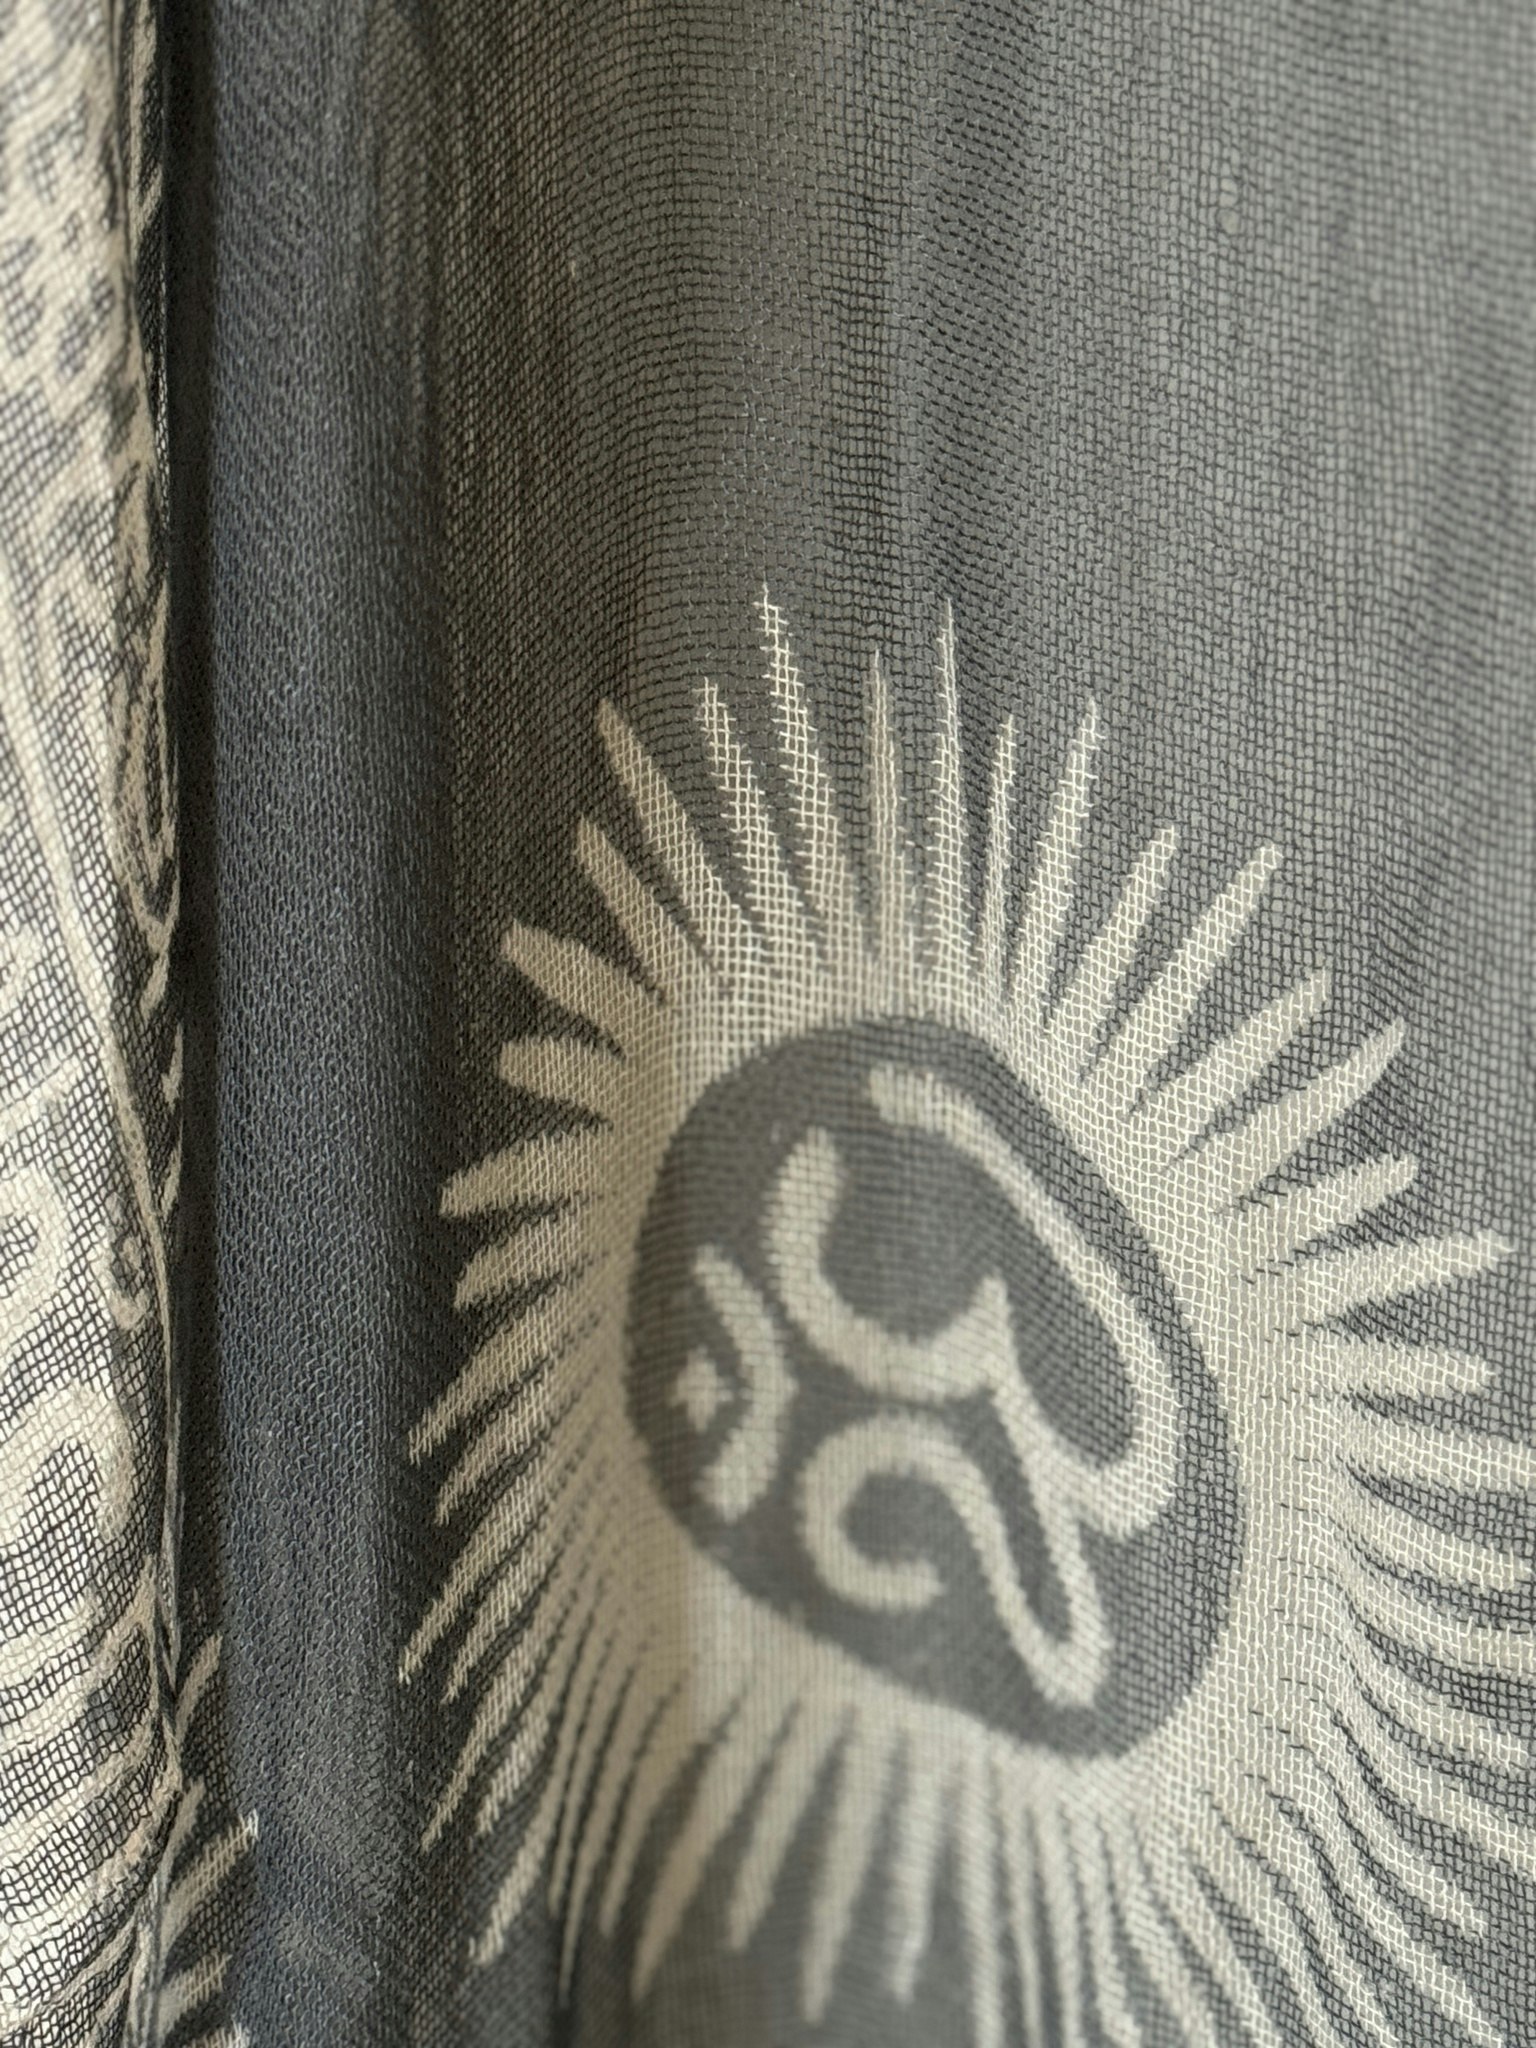 Sjal från Indien grå